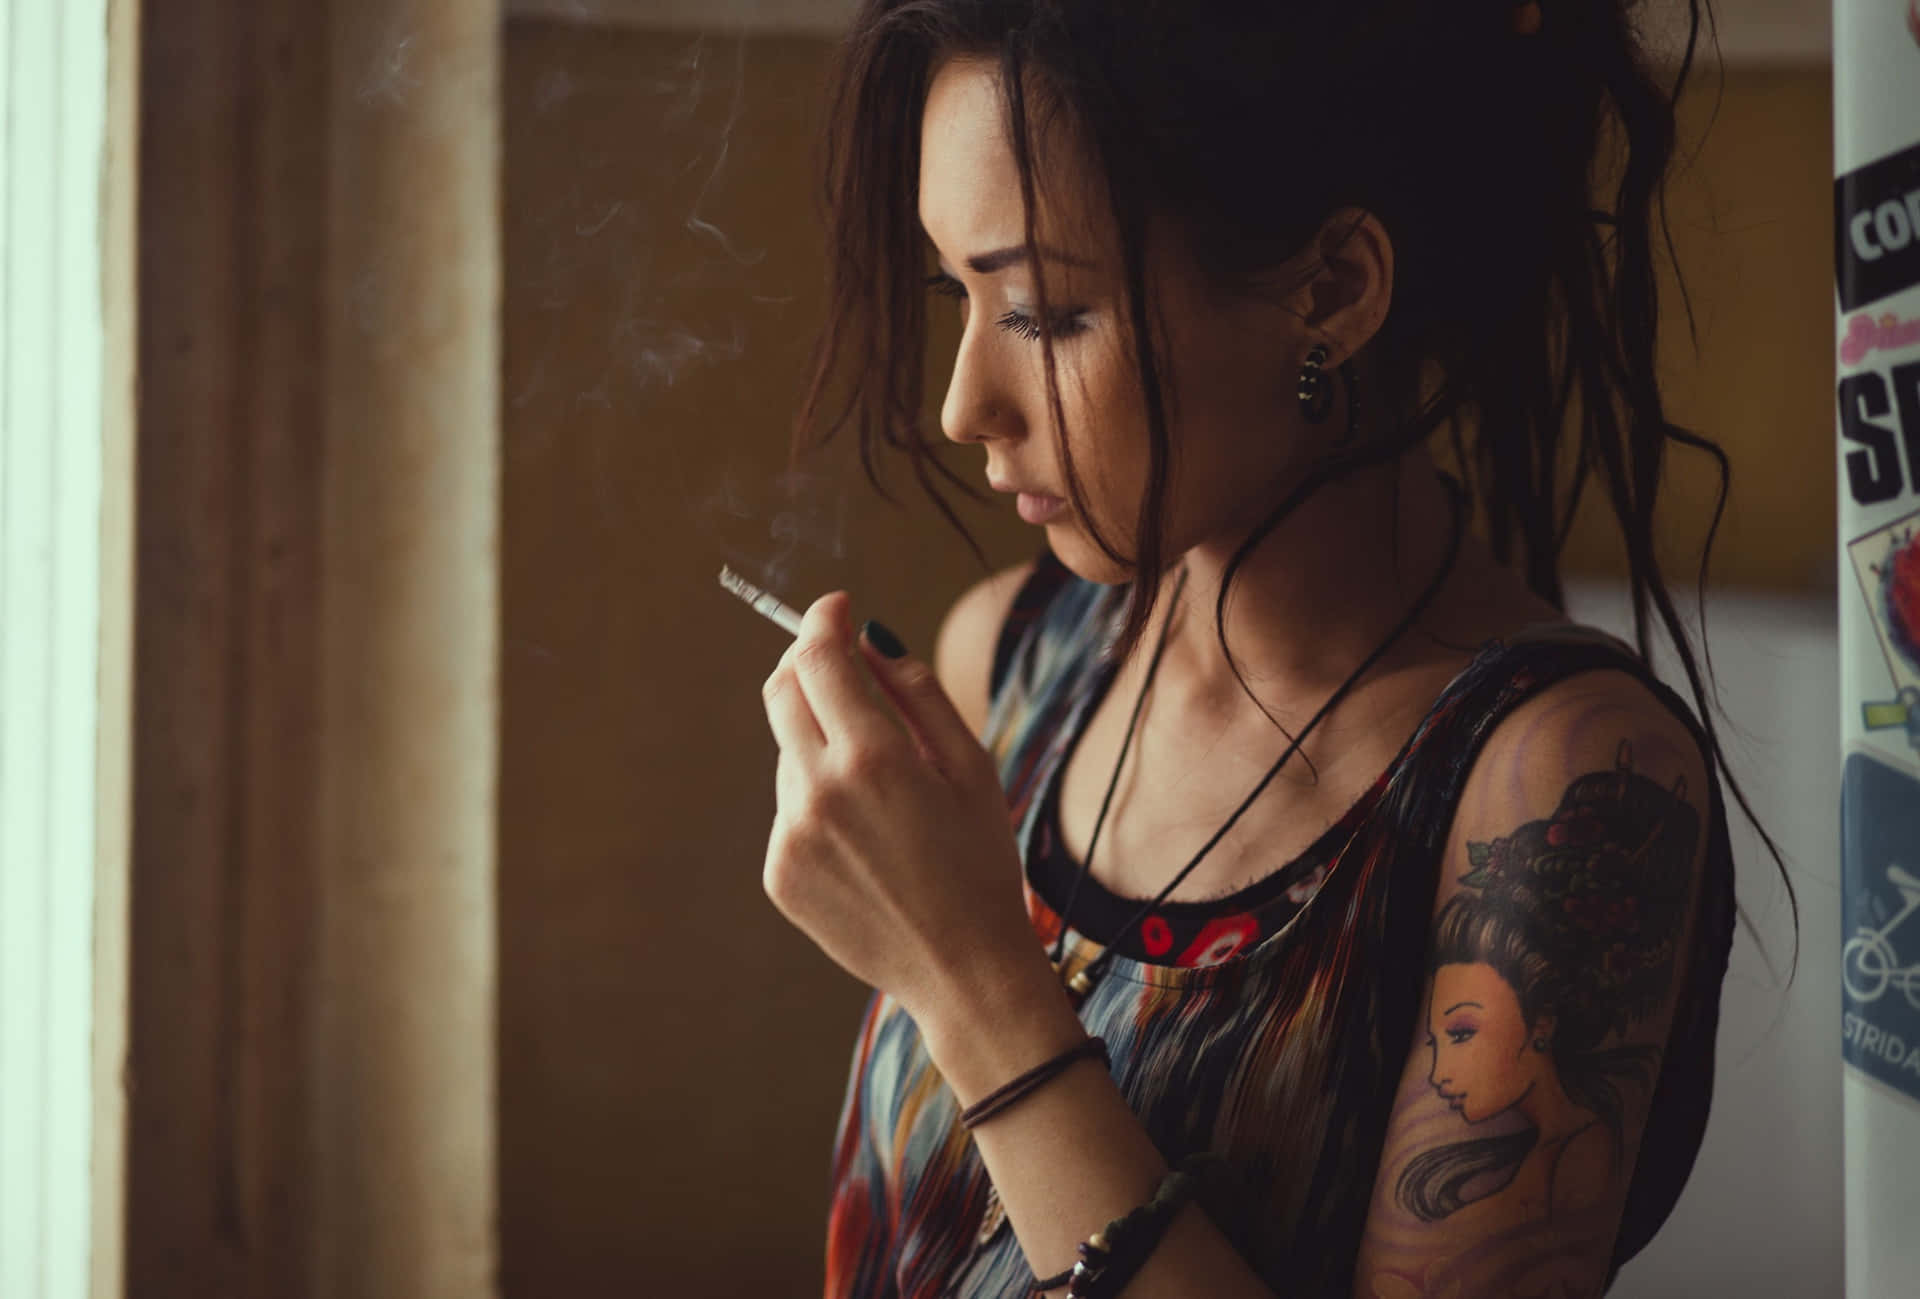 Tätowiertesasiatisches Mädchen Raucht Wallpaper